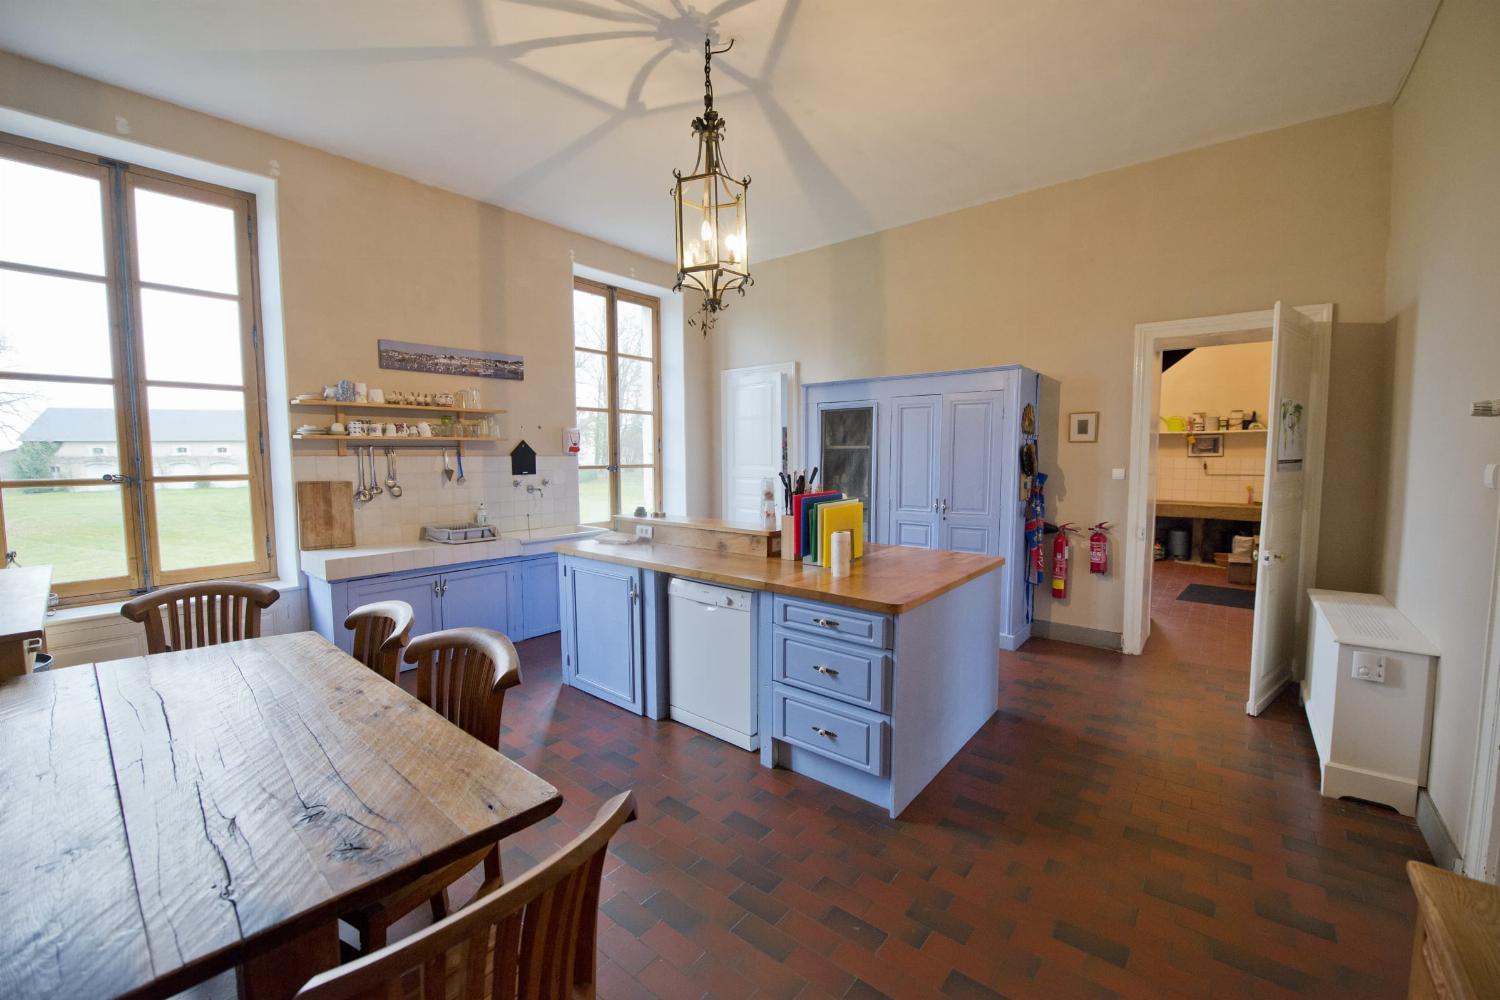 Kitchen | Rental château in Loire